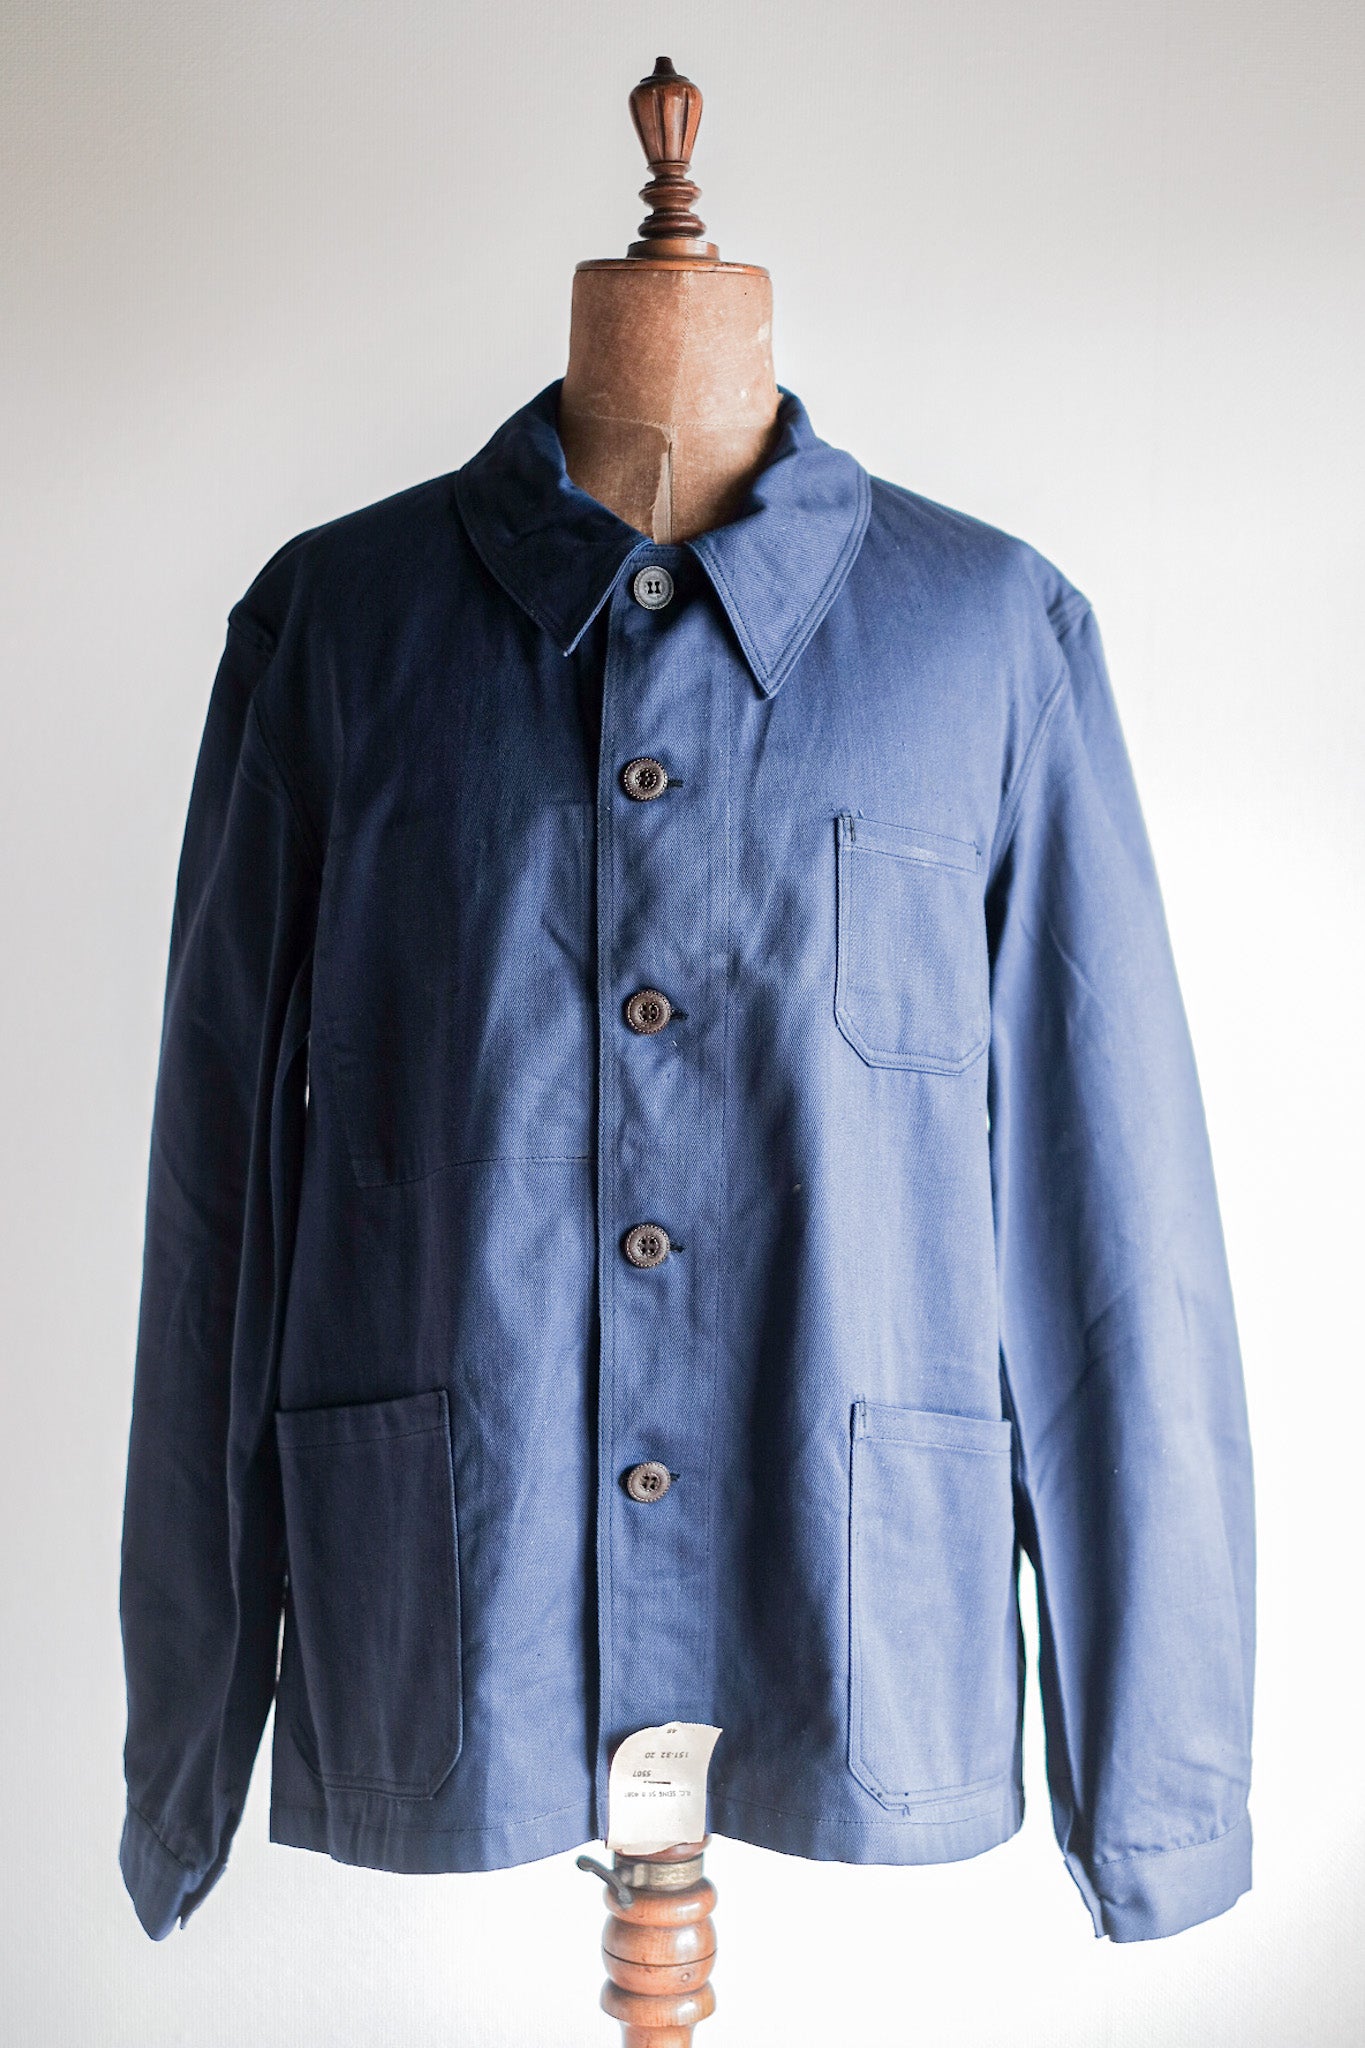 [~ 50's] แจ็คเก็ตผ้าฝ้ายผ้าฝ้ายสีน้ำเงินวินเทจฝรั่งเศส "สต็อกตาย"